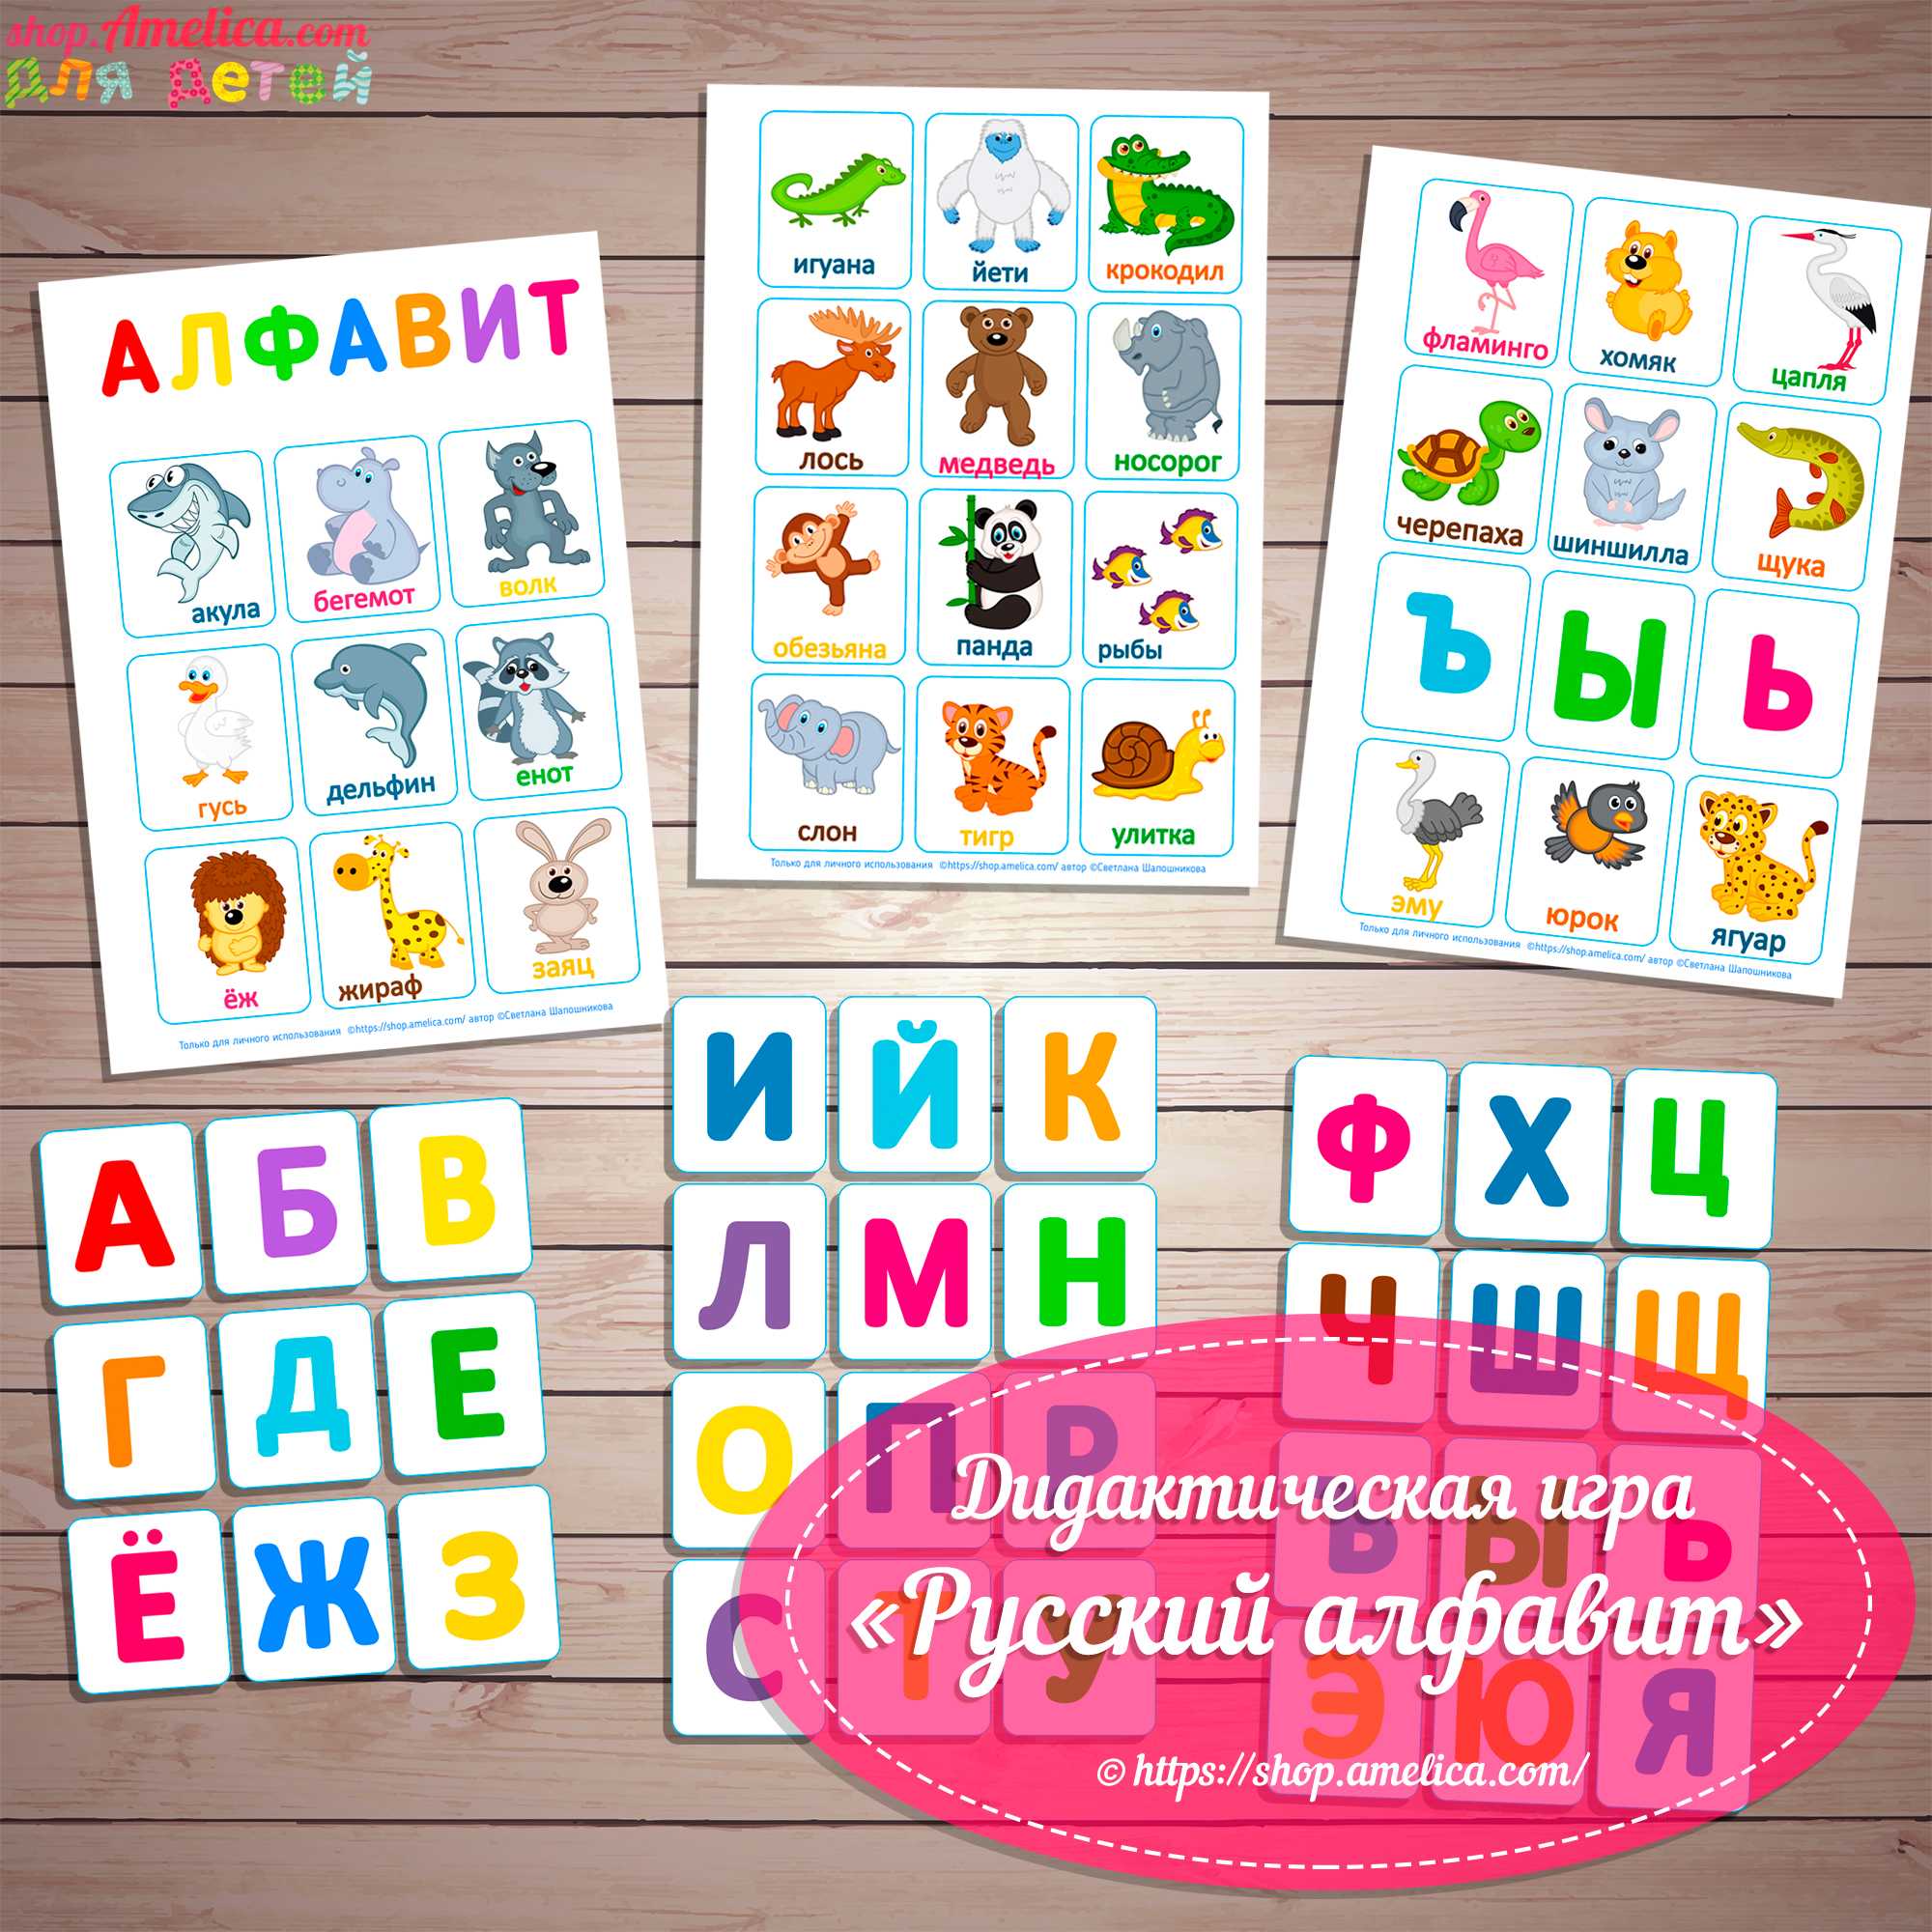 Английский алфавит с произношением для детей: топ-5 игр